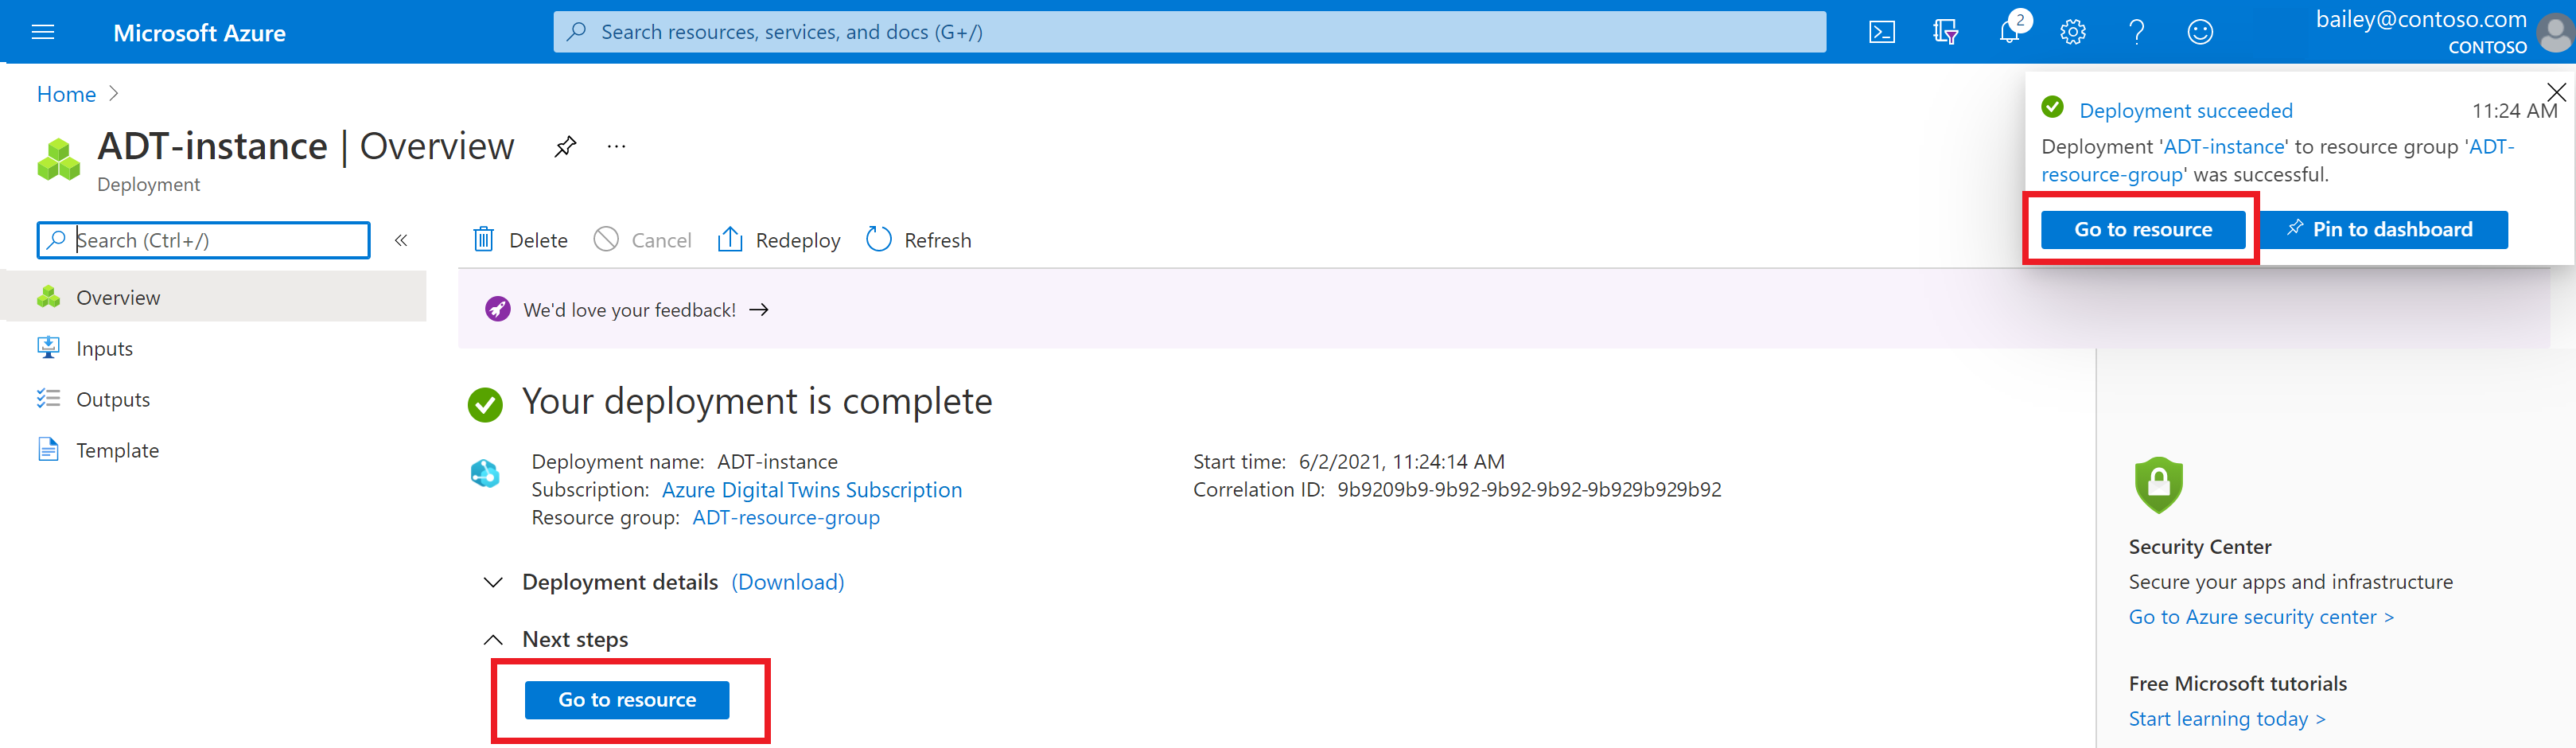 Capture d’écran de la page de déploiement pour Azure Digital Twins dans le portail Azure. La page indique que le déploiement est terminé.